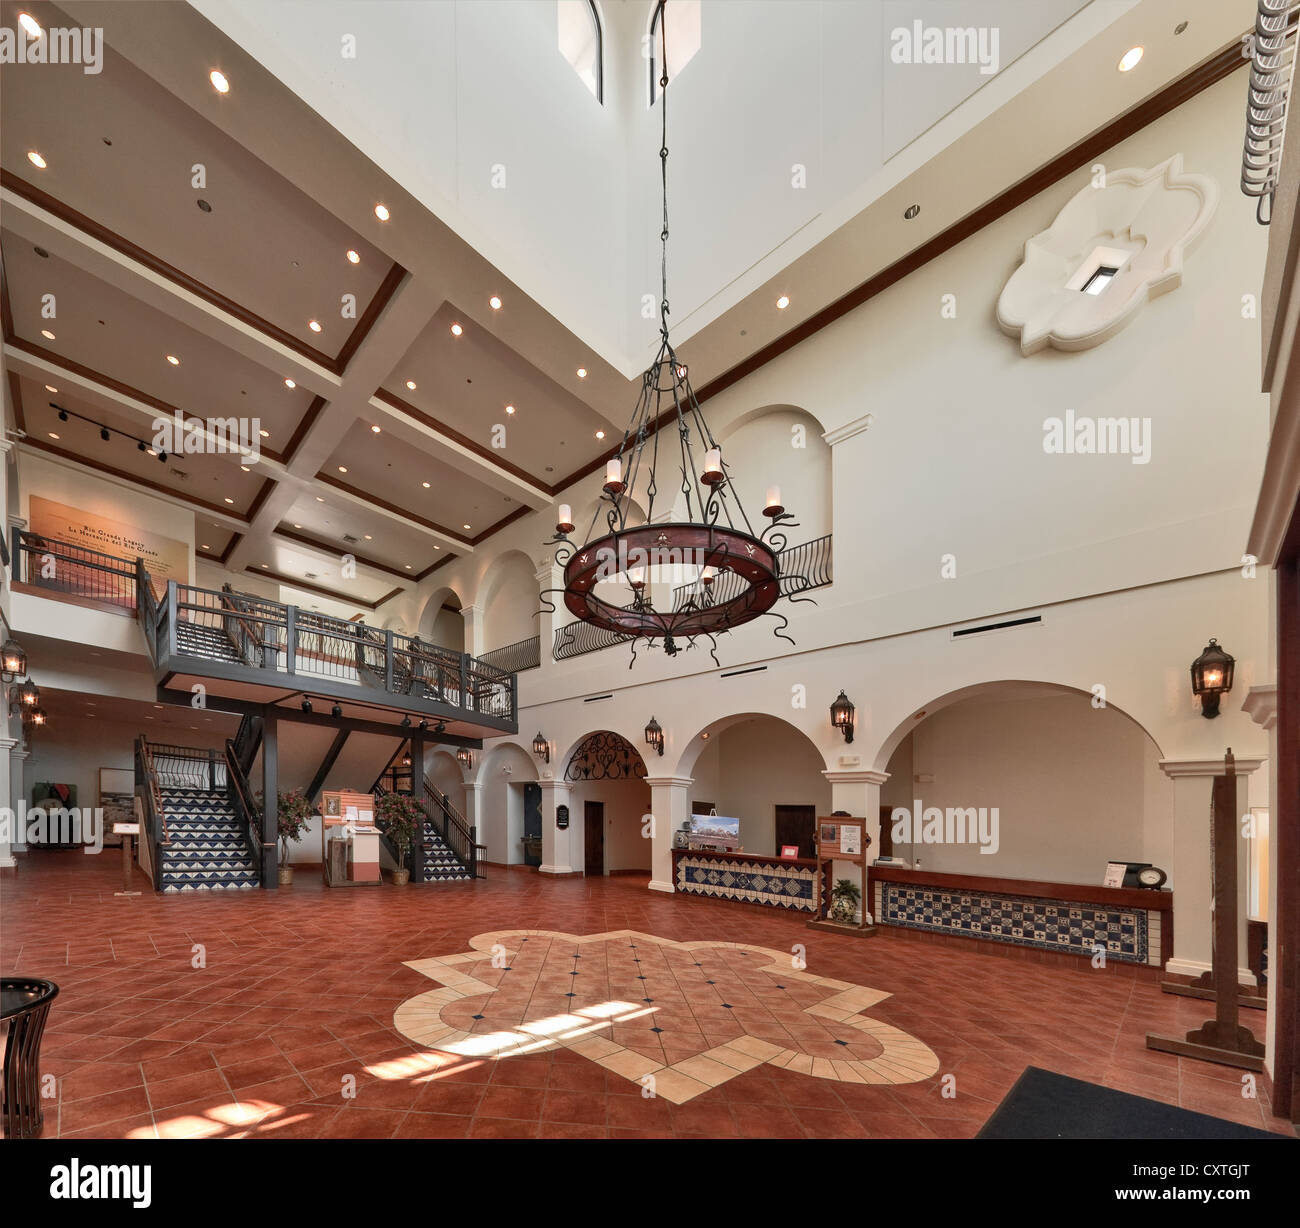 Grand Lobby presso il Museo di South Texas storia coloniale spagnola in stile Revival, Edinburg, Rio Grande Valley, Texas, Stati Uniti d'America Foto Stock